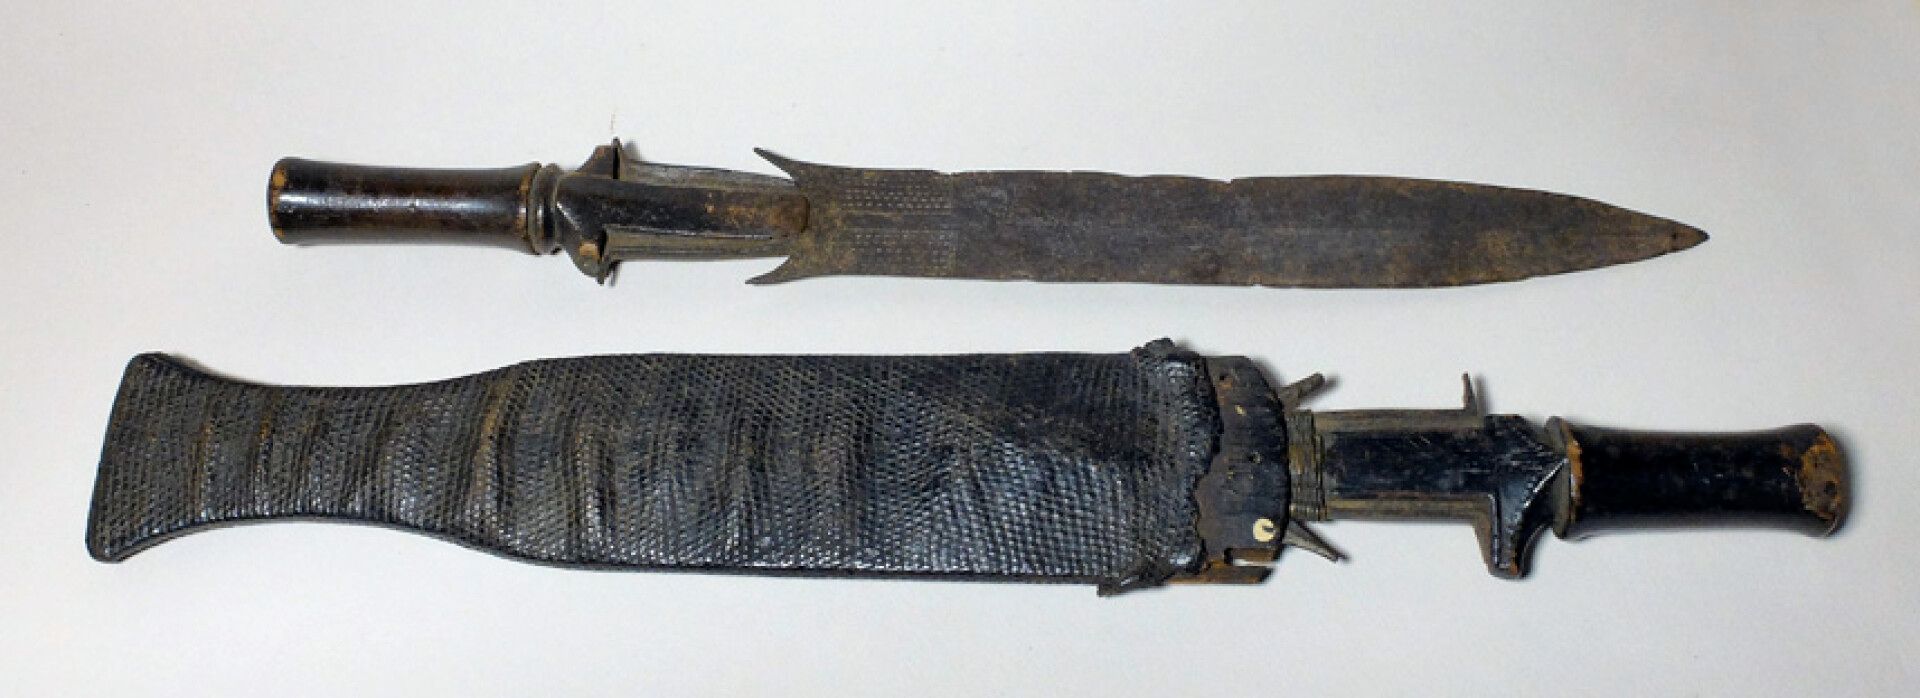 Null Lot de deux couteaux Fang (Gabon)

Lot comprenant deux couteaux dont un ave&hellip;